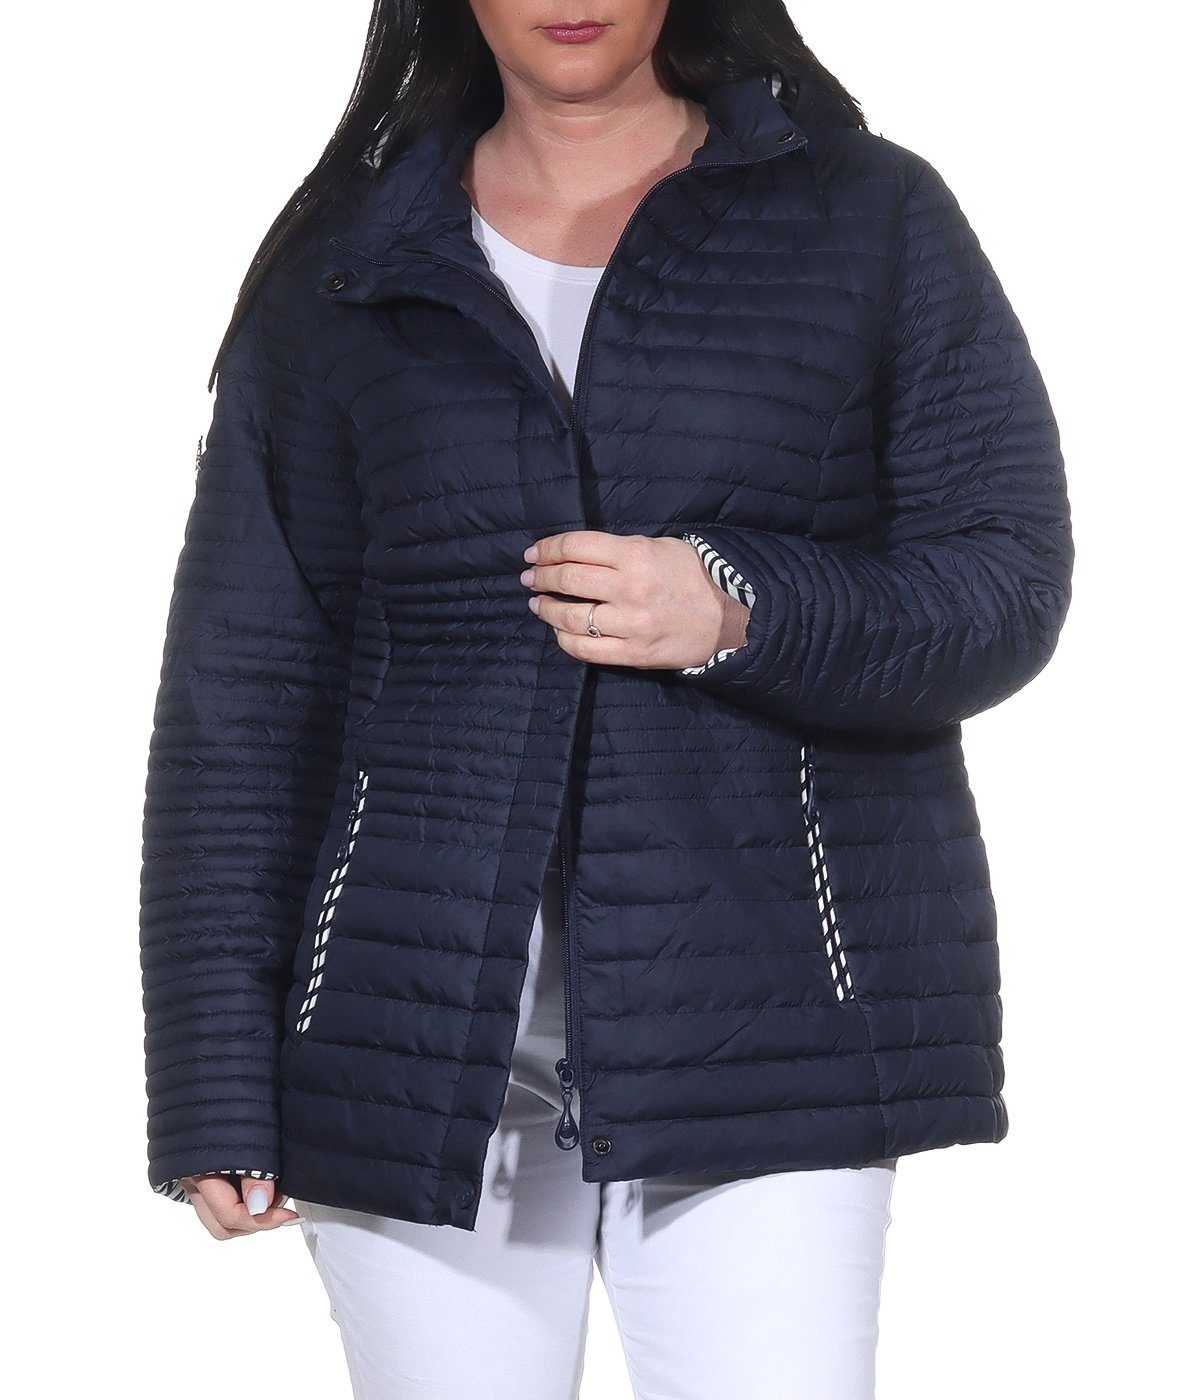 Aurela Damenmode Steppjacke Damen Sommerjacke leichte Outdoor Jacke auch in großen Größen erhältlich, angenehm leichte Übegrangsjacke Marine